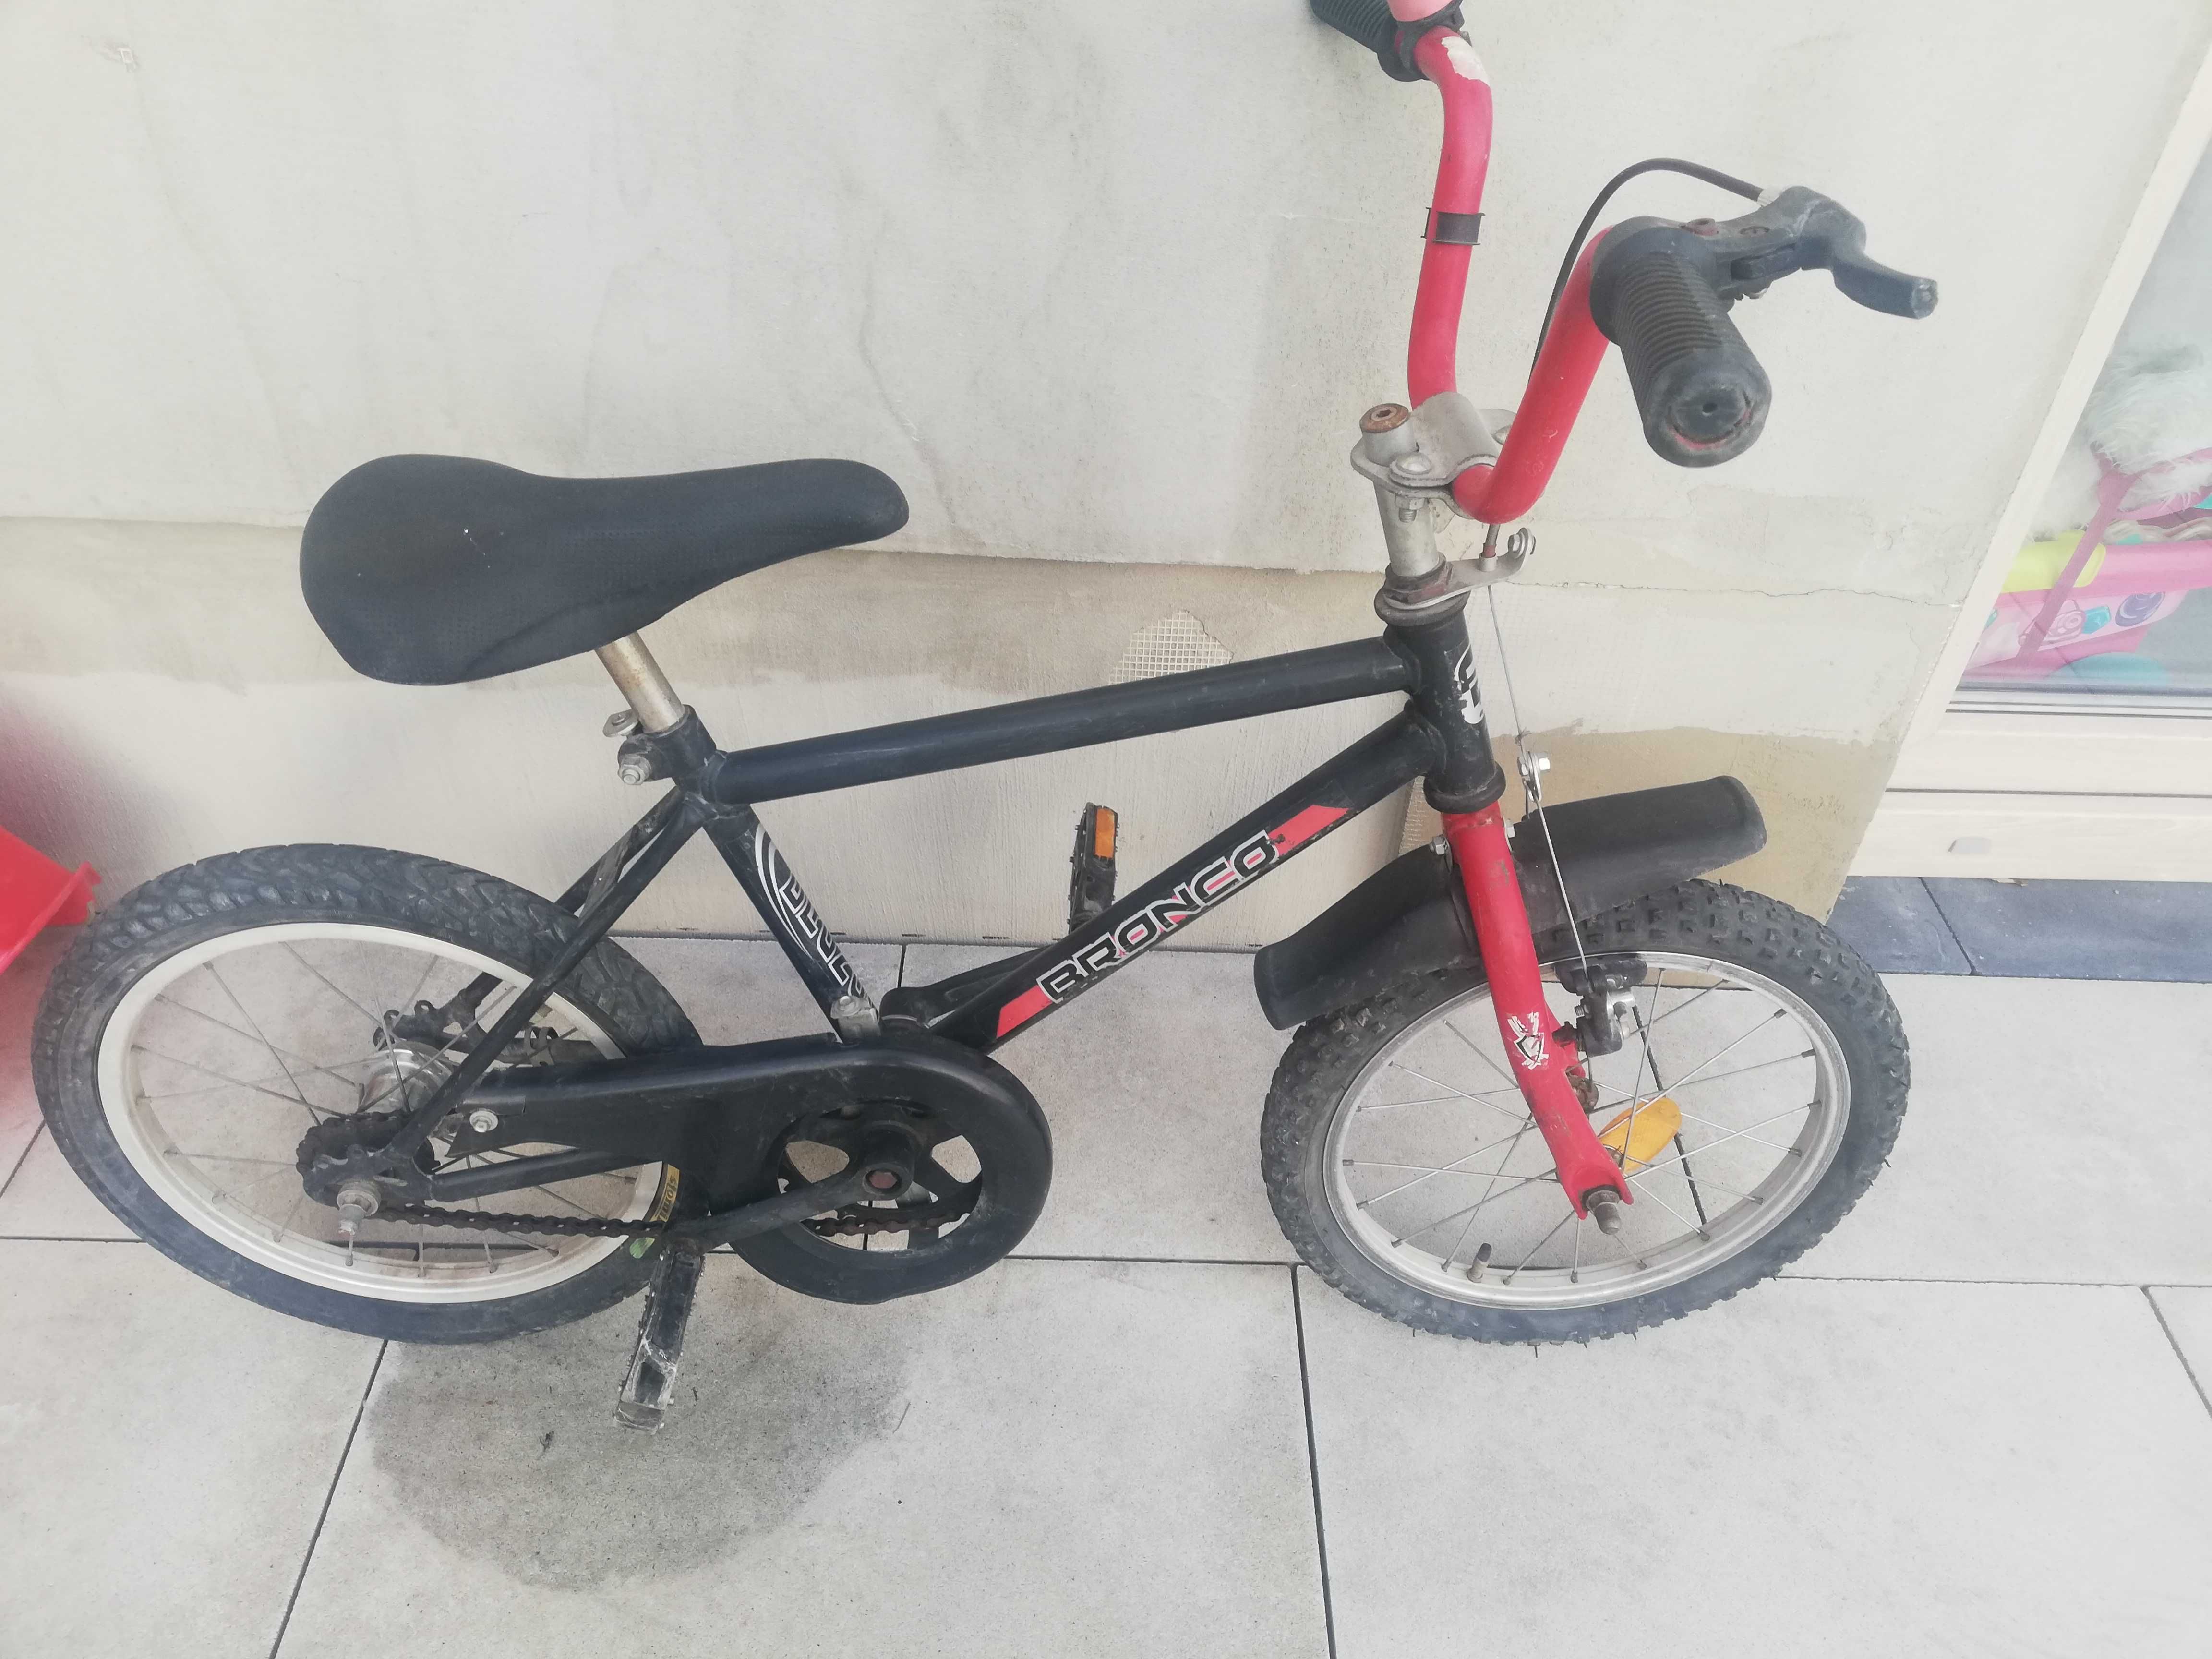 Wyprzedaż garażowa - fajny mały rowerek dla dziecka typu BMX